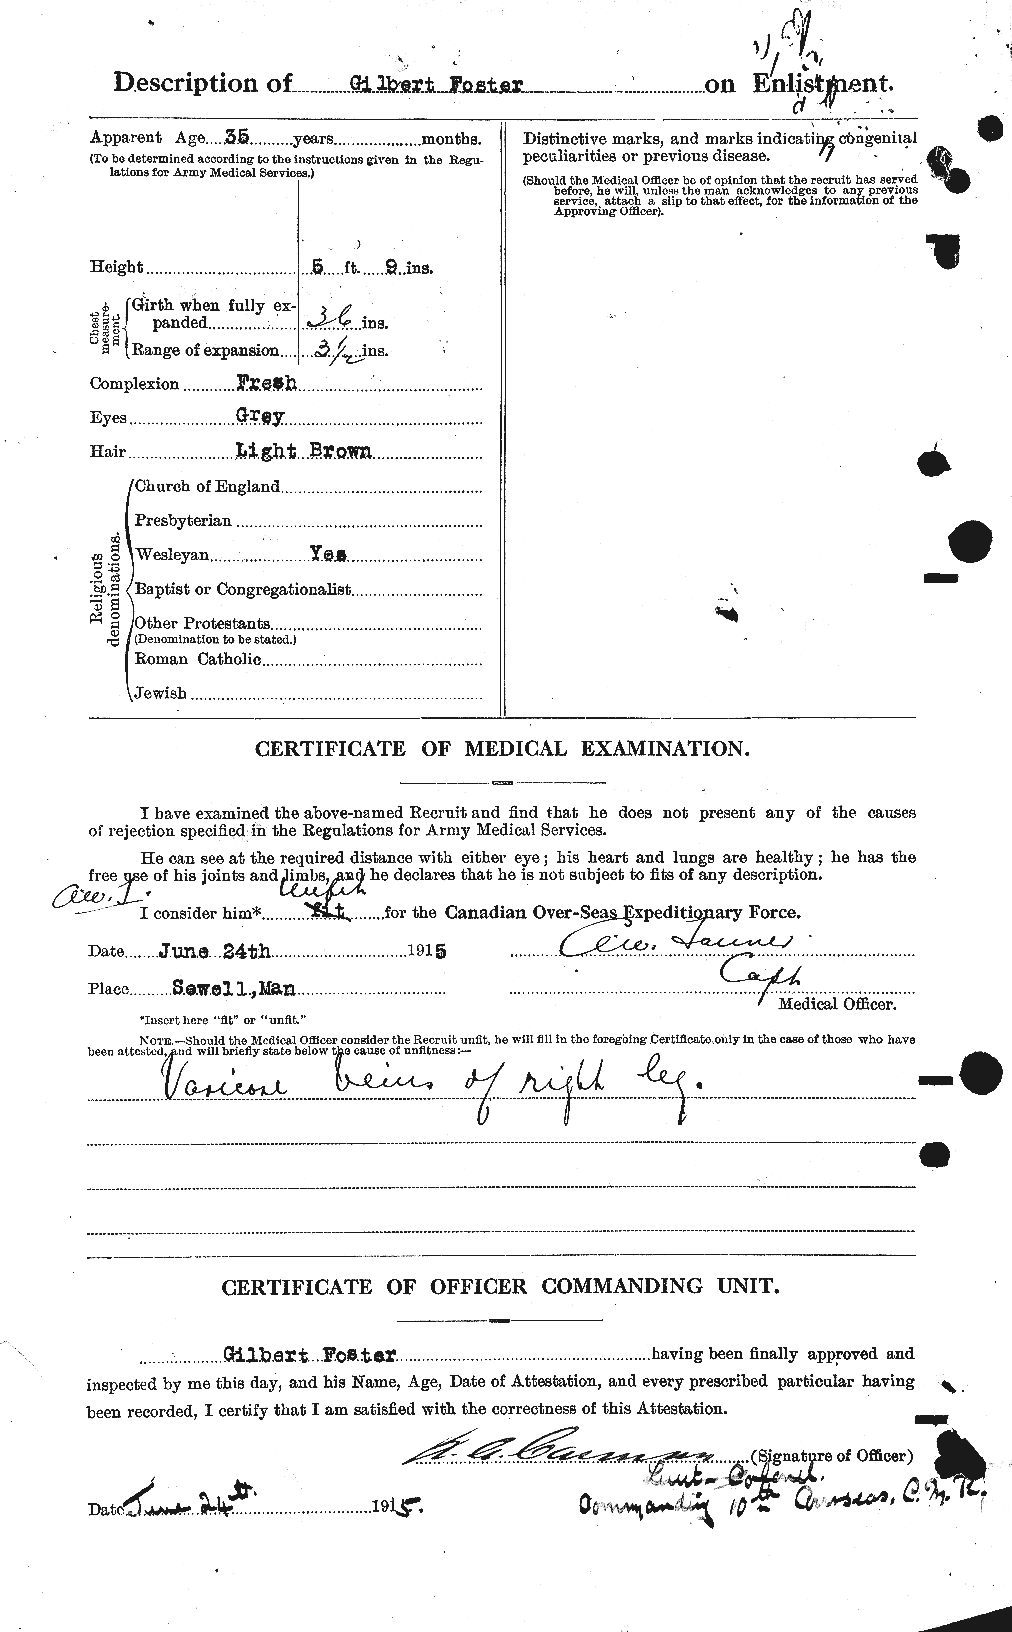 Dossiers du Personnel de la Première Guerre mondiale - CEC 330712b